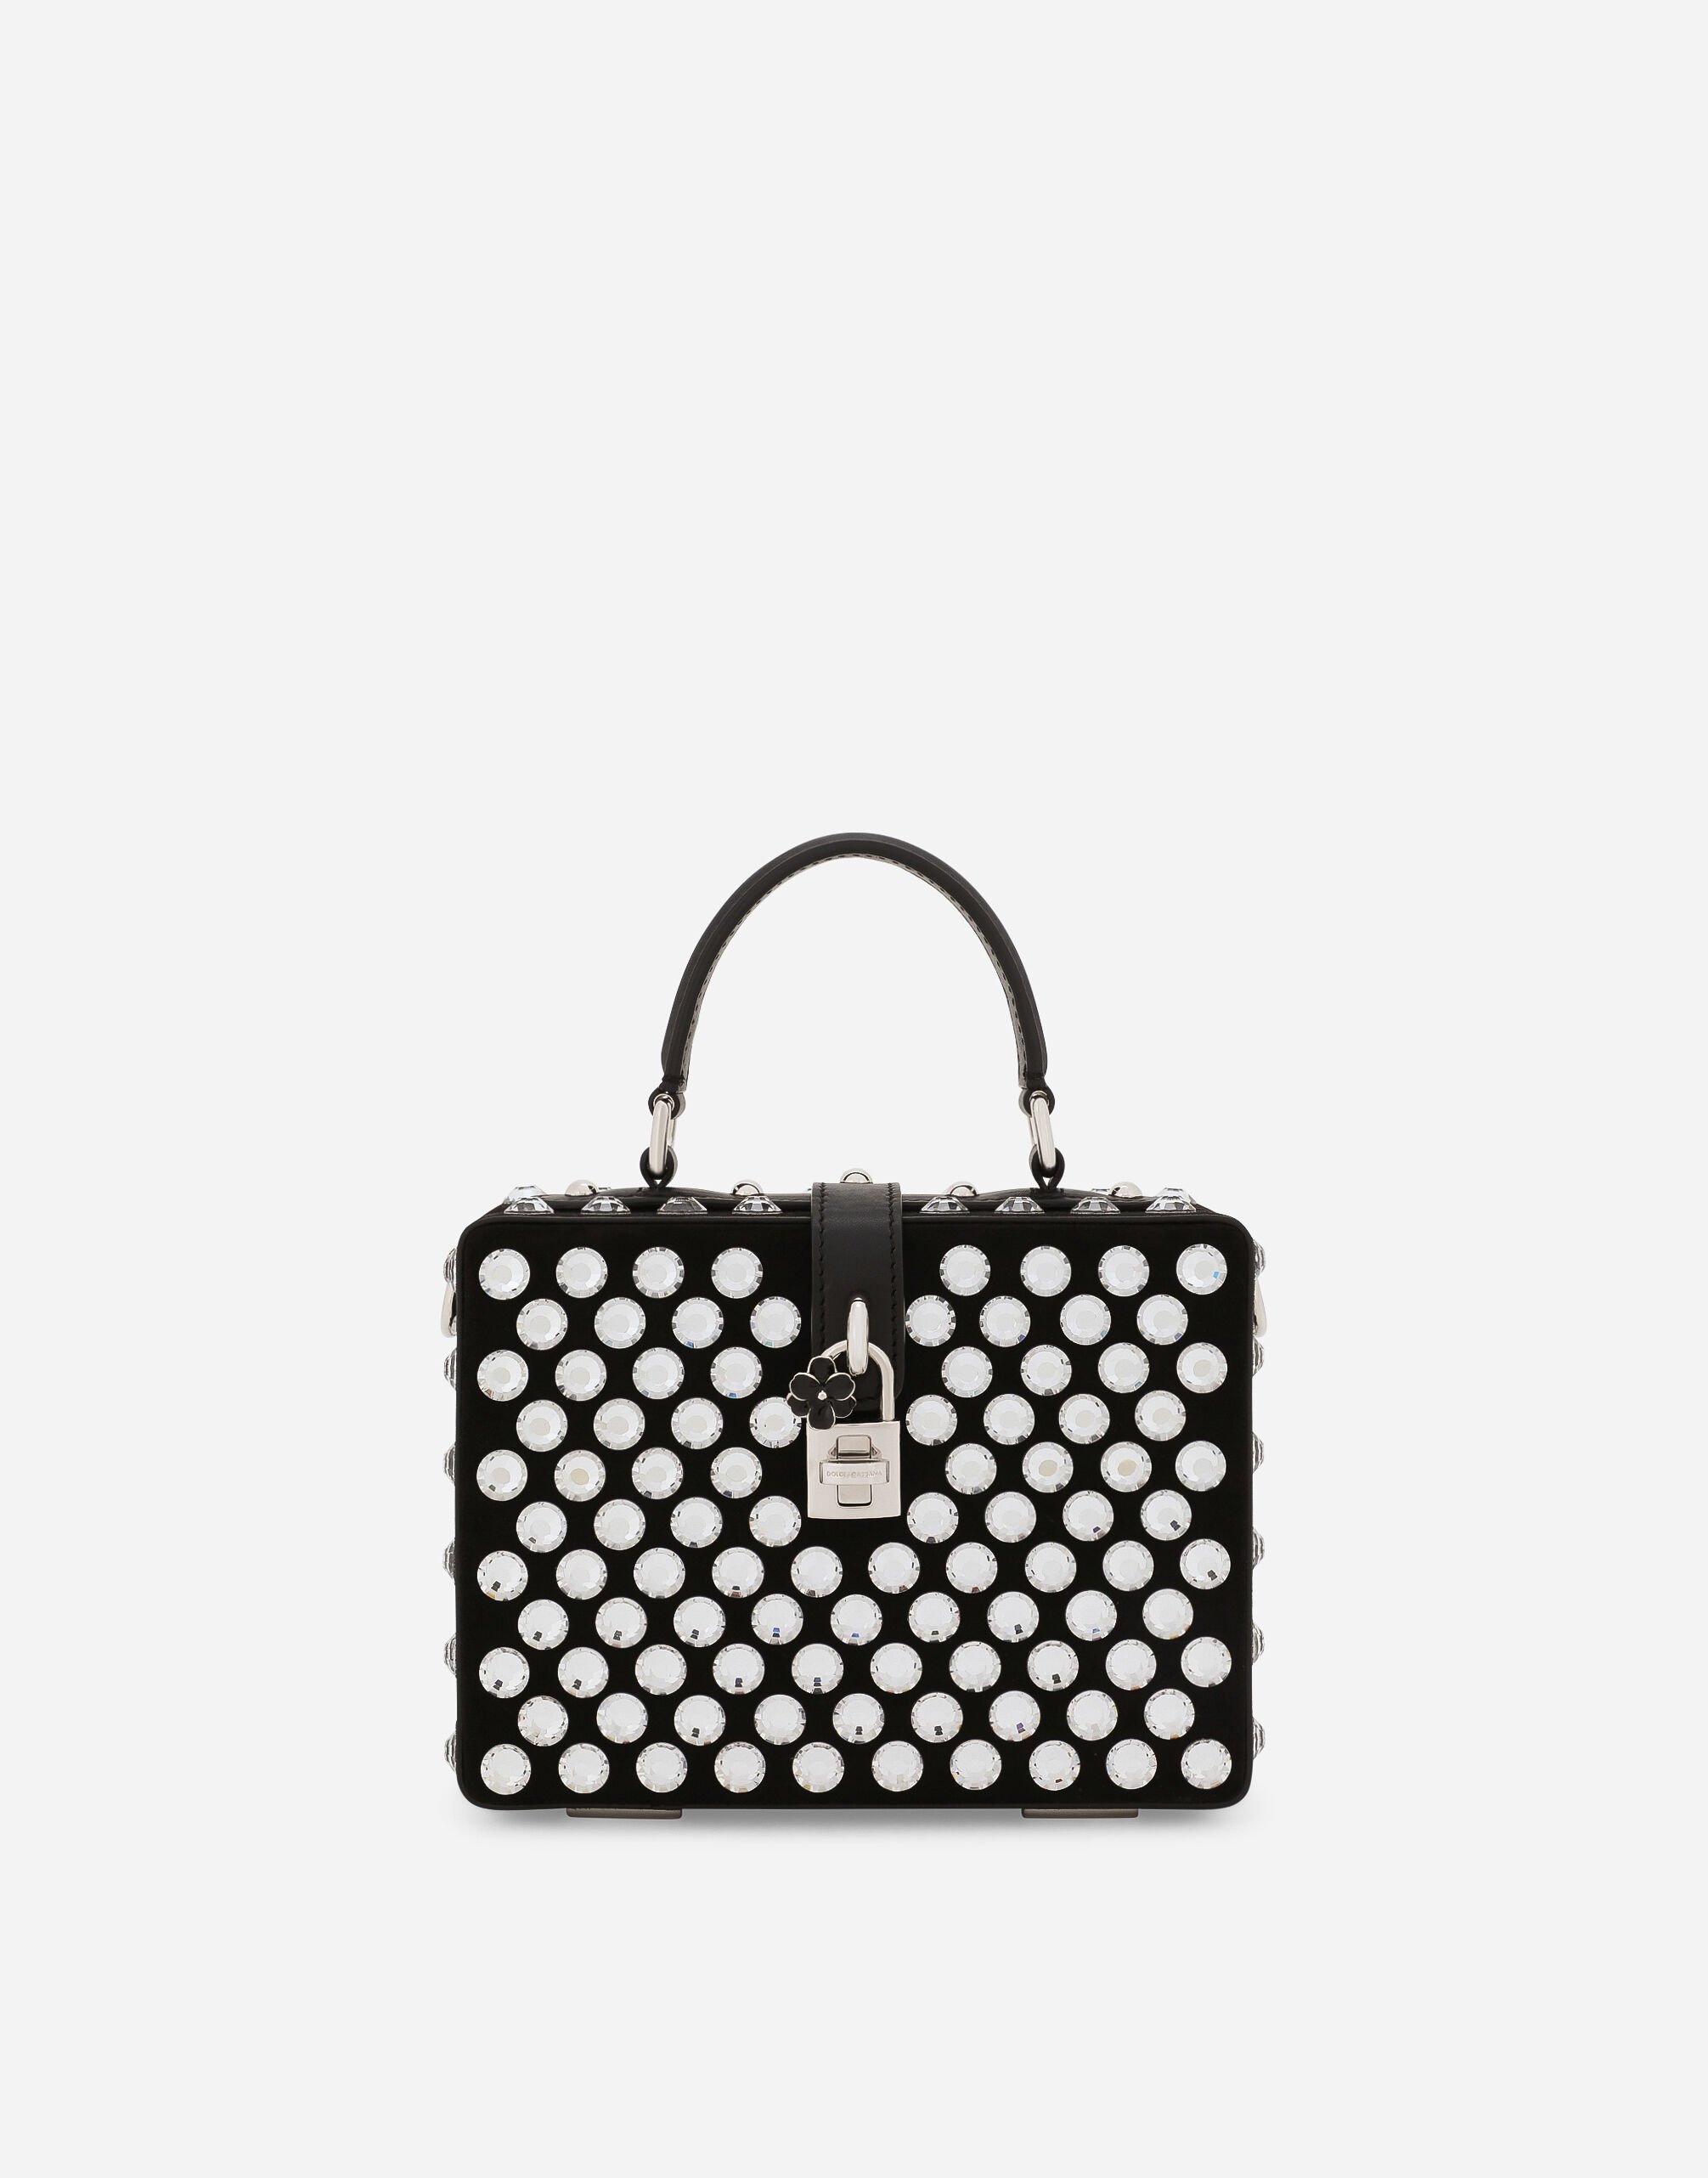 Dolce & Gabbana Dolce Box handbag Black BB7625AU640